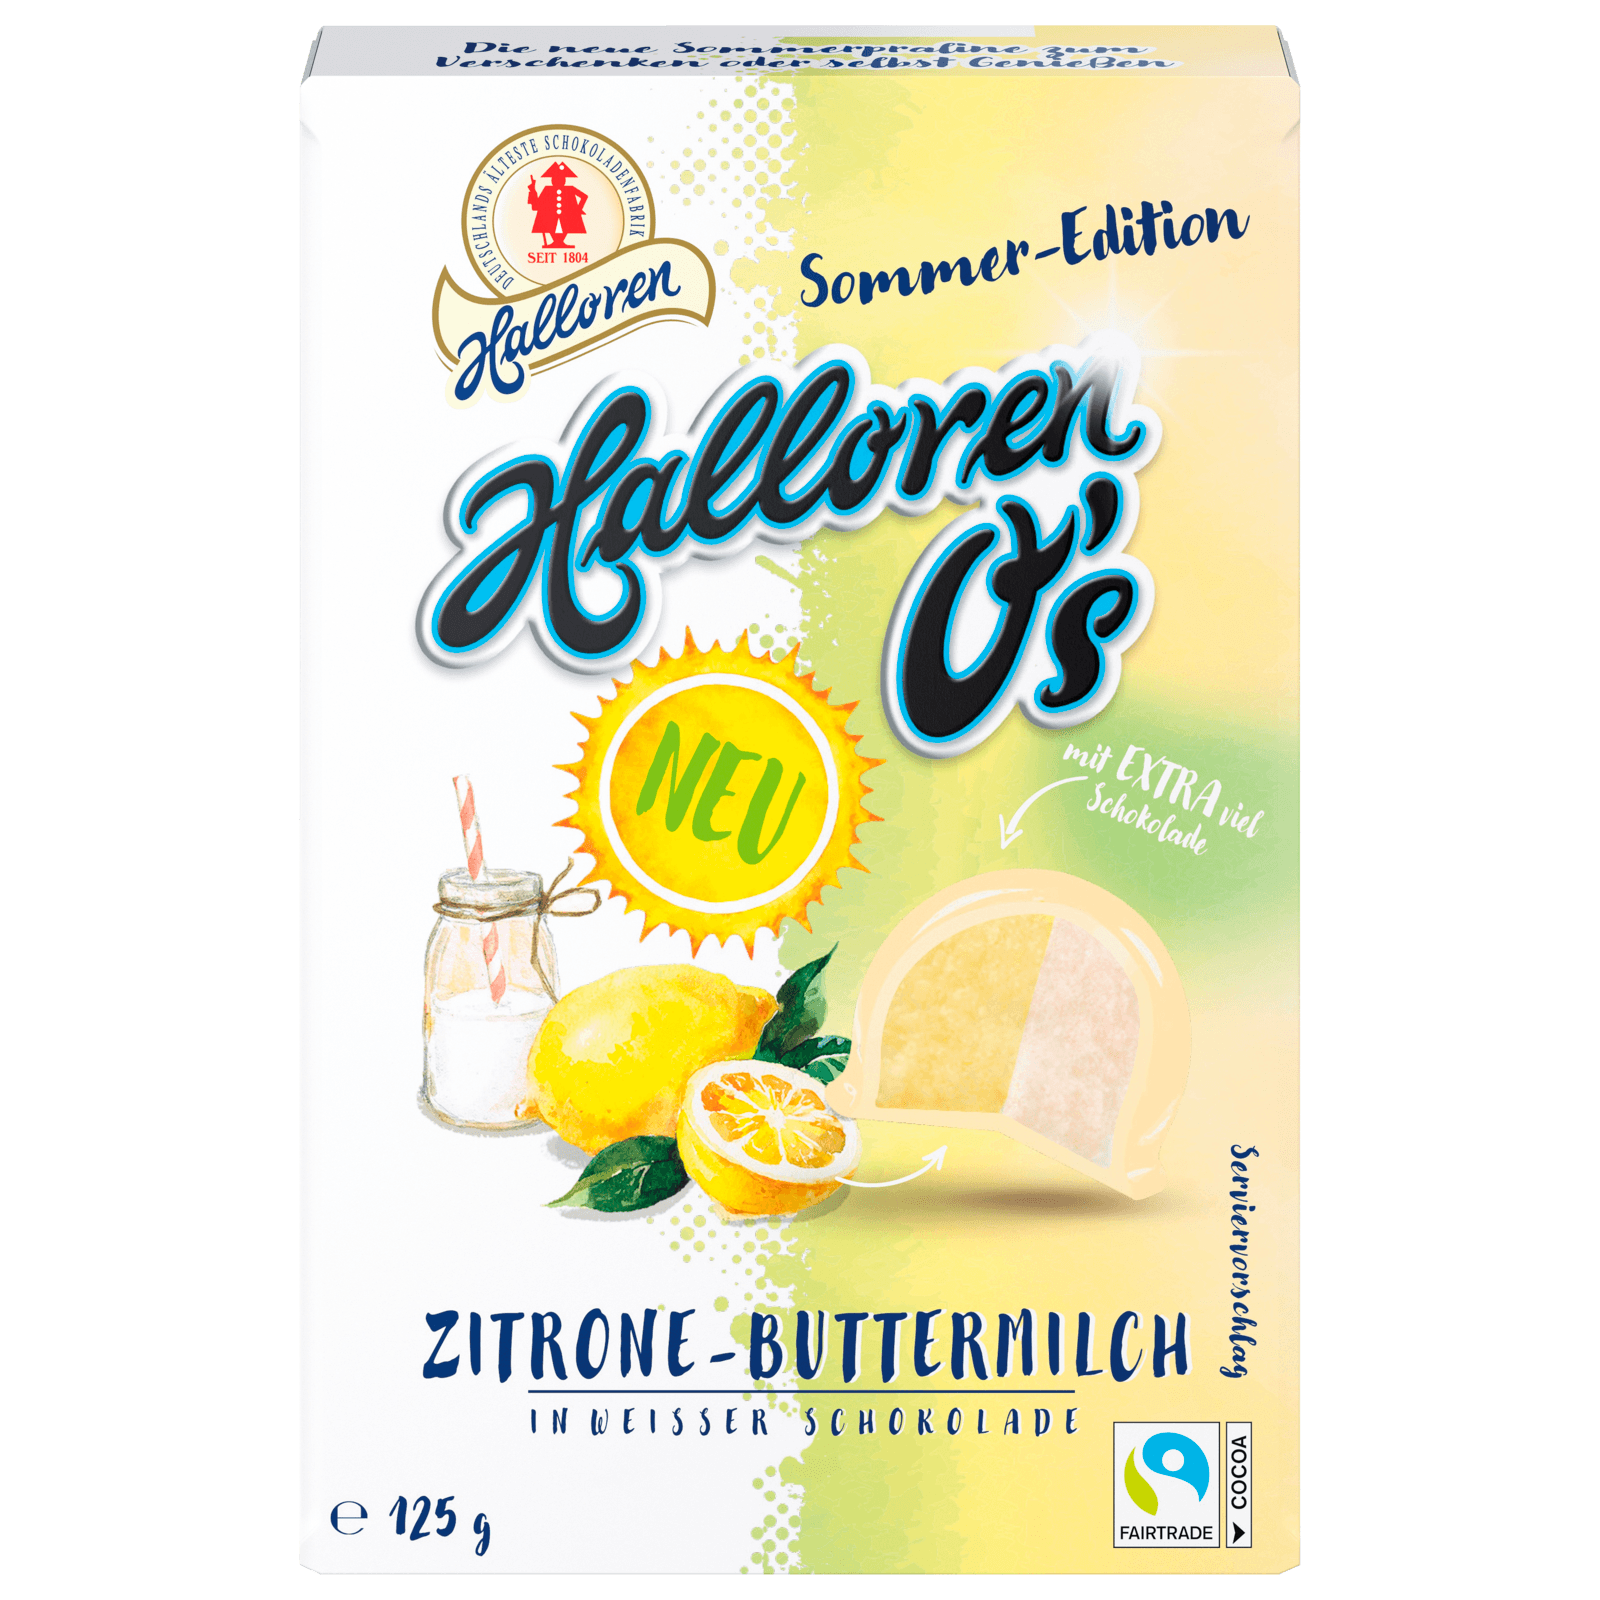 Halloren O\'s Zitrone-Buttermilch in weißer 125g Schokolade bei REWE bestellen! online